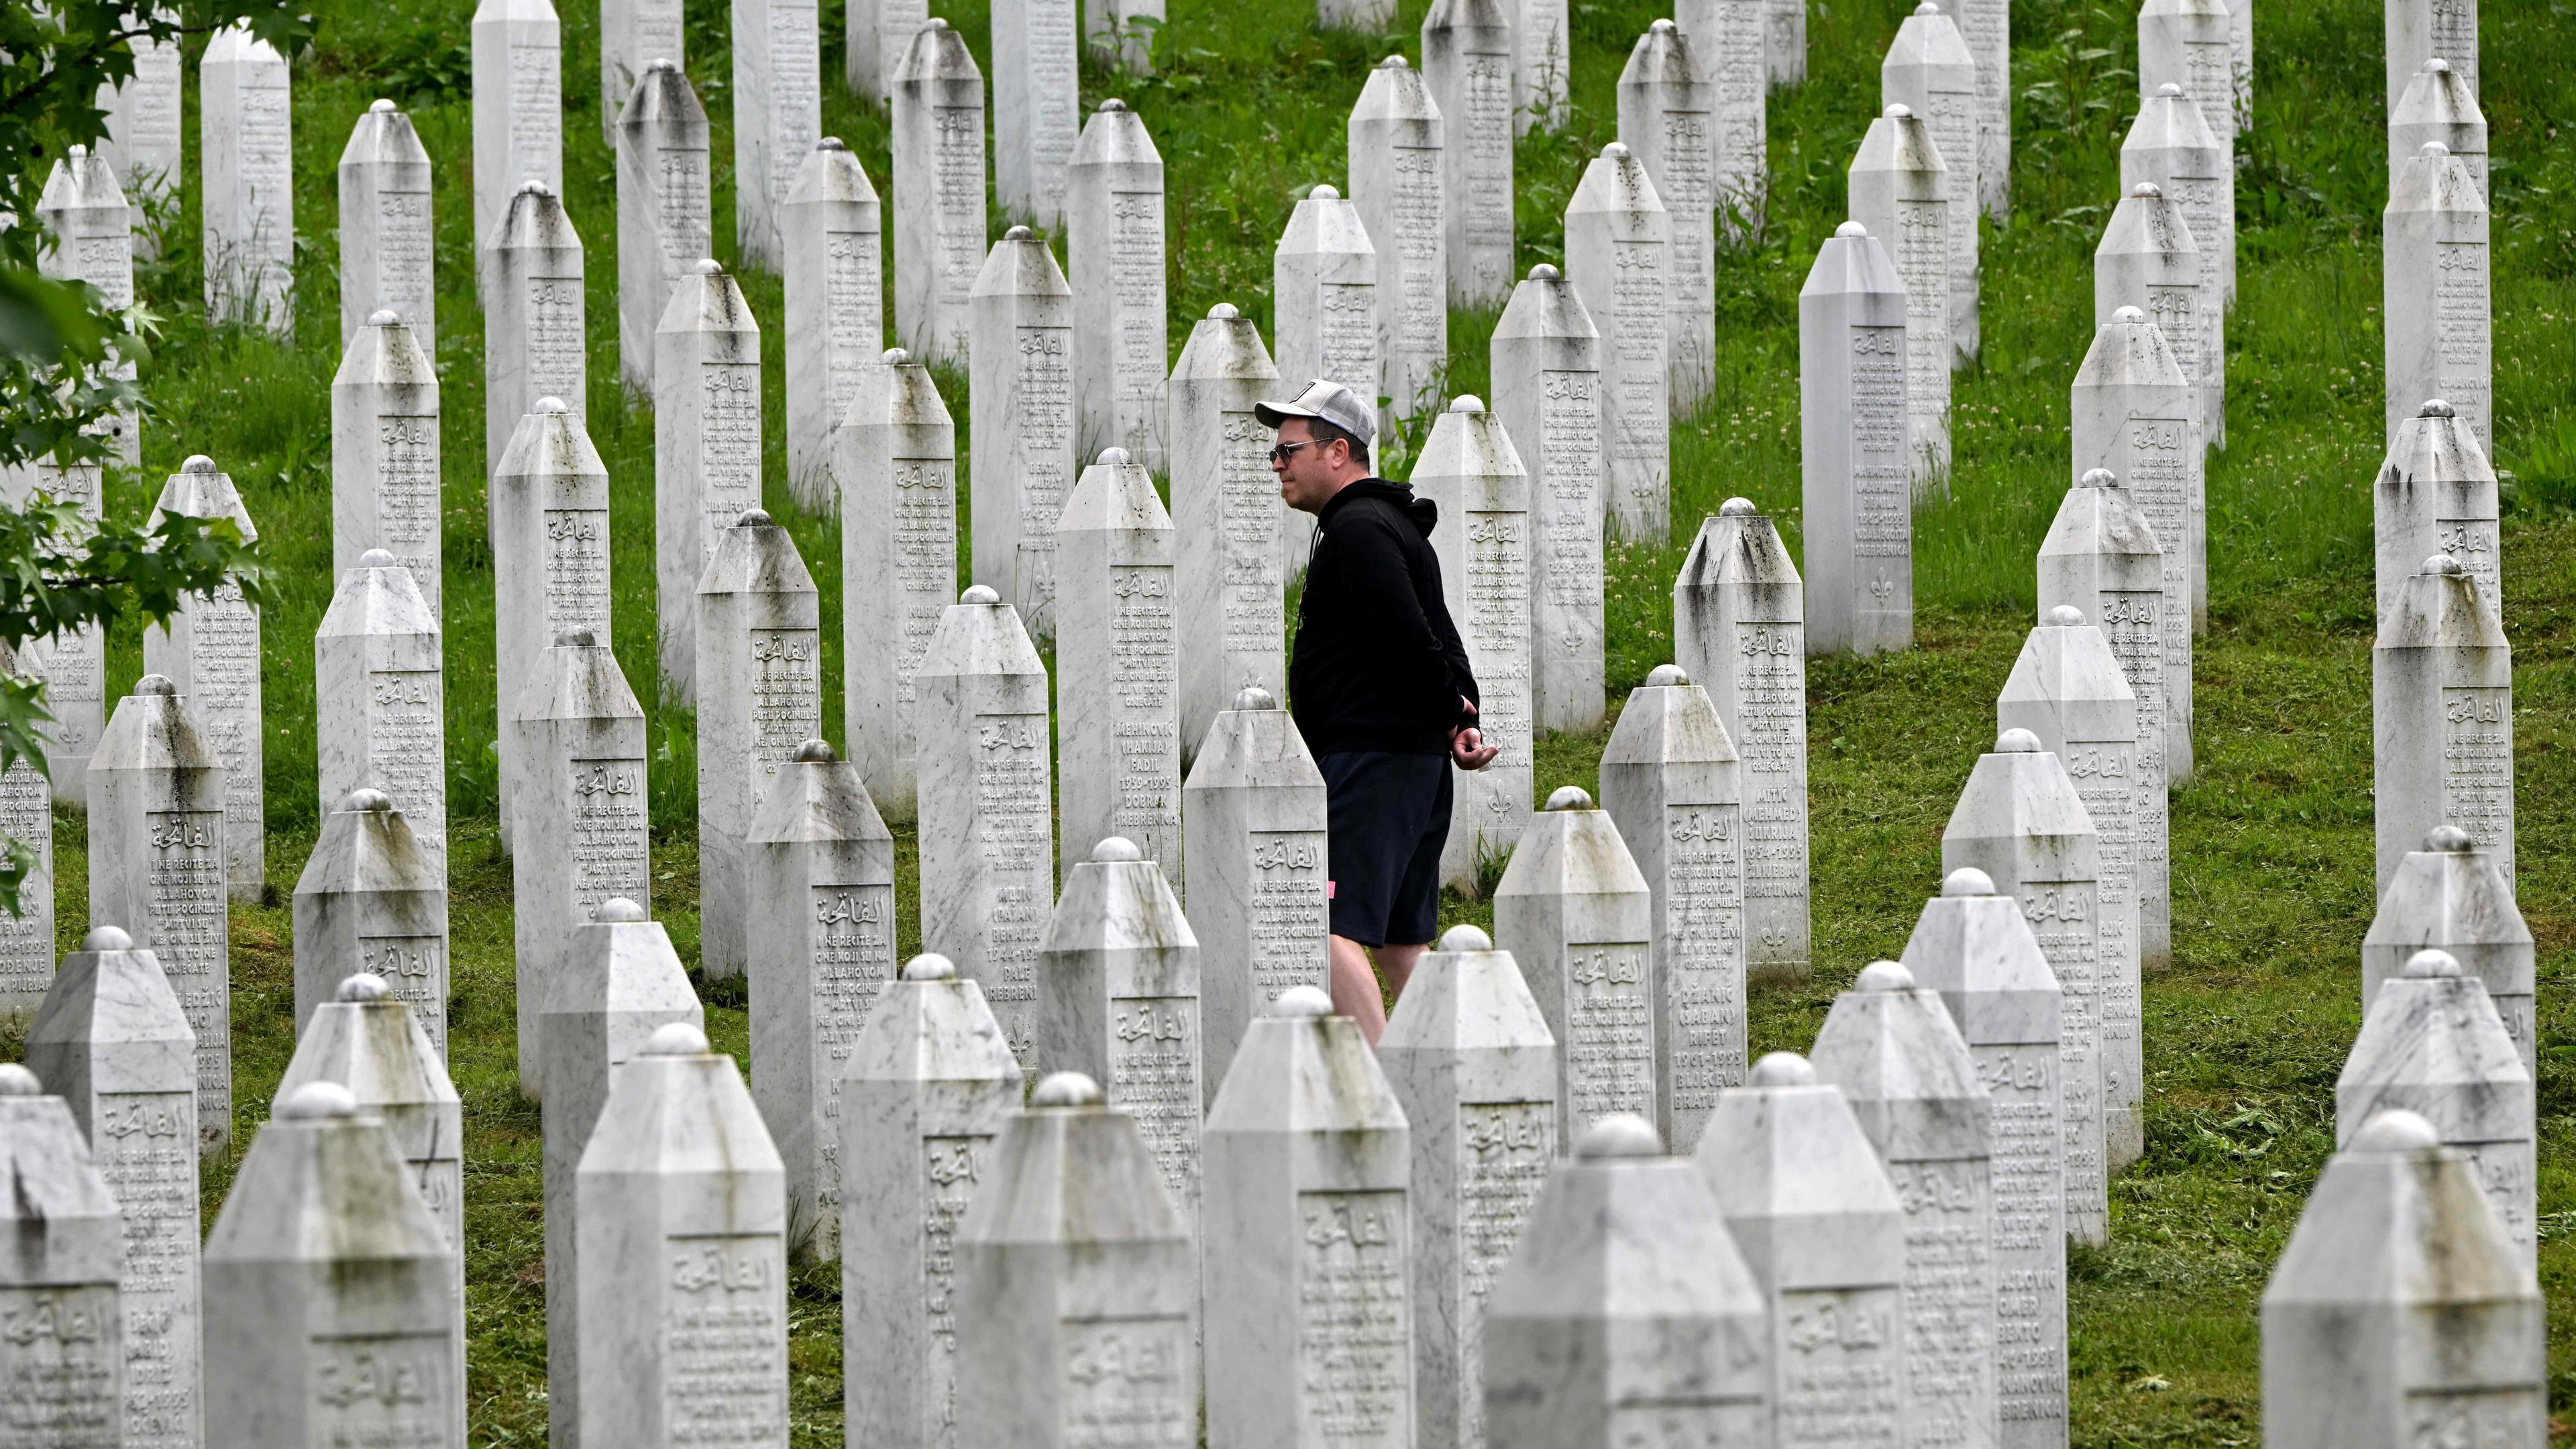 Binnen weniger Tage hatte die Armee der Republika Srpska 1995 bei der Stadt Srebrenica mehr als 8.000 muslimische Bosniaken ermordet.